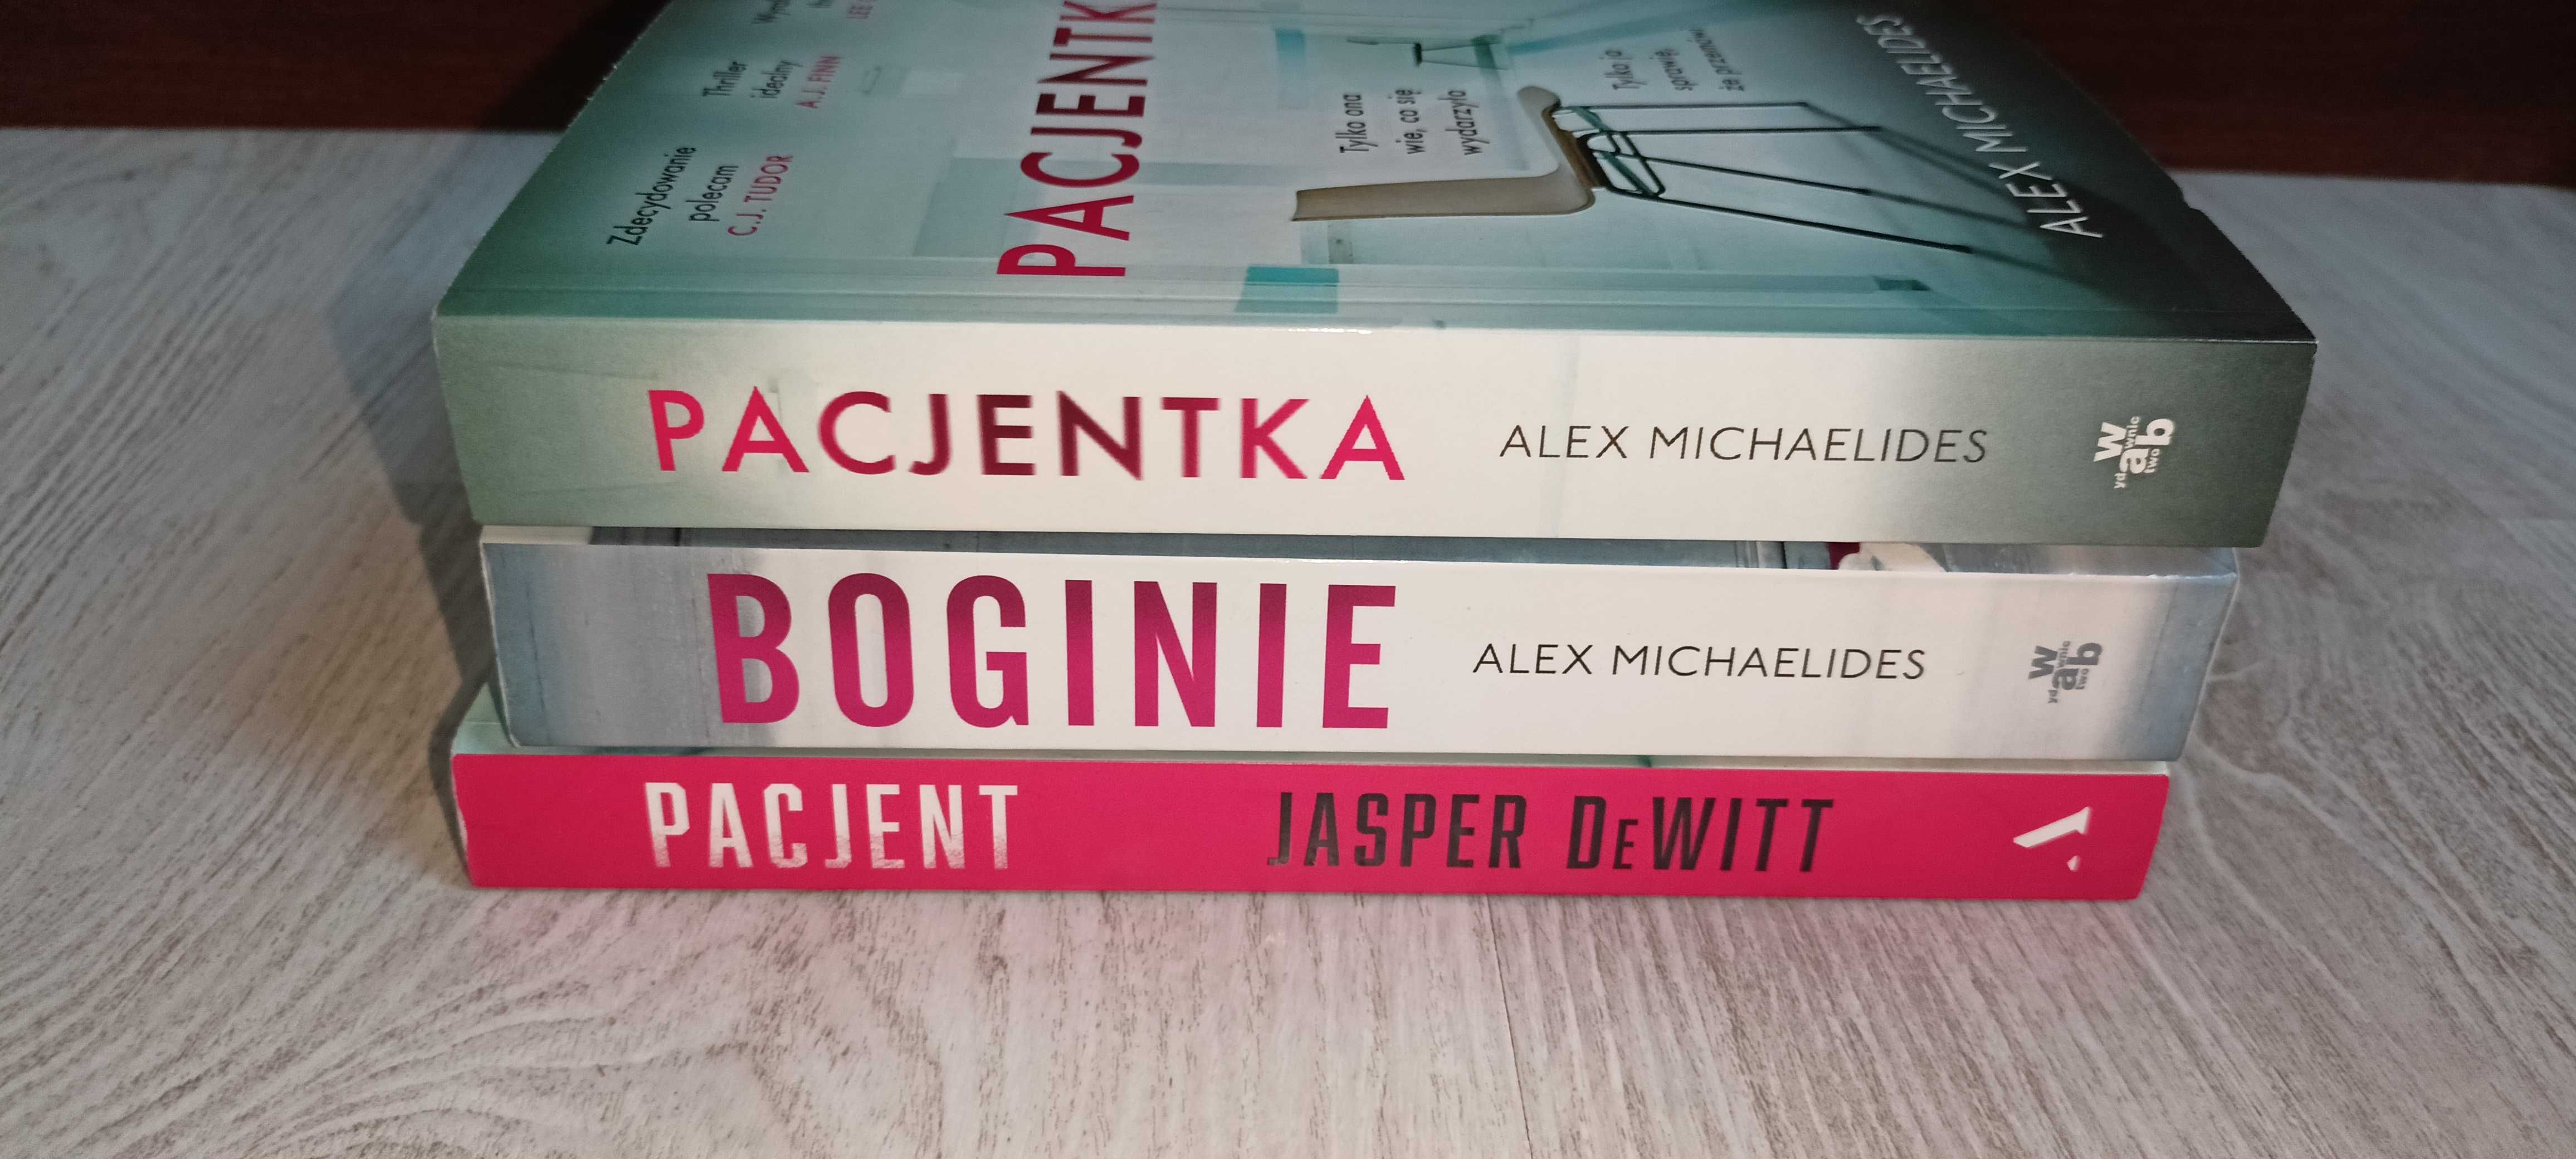 3x Alex Michaelides Pacjentka + Boginie + Jasper DeWitt Pacjent